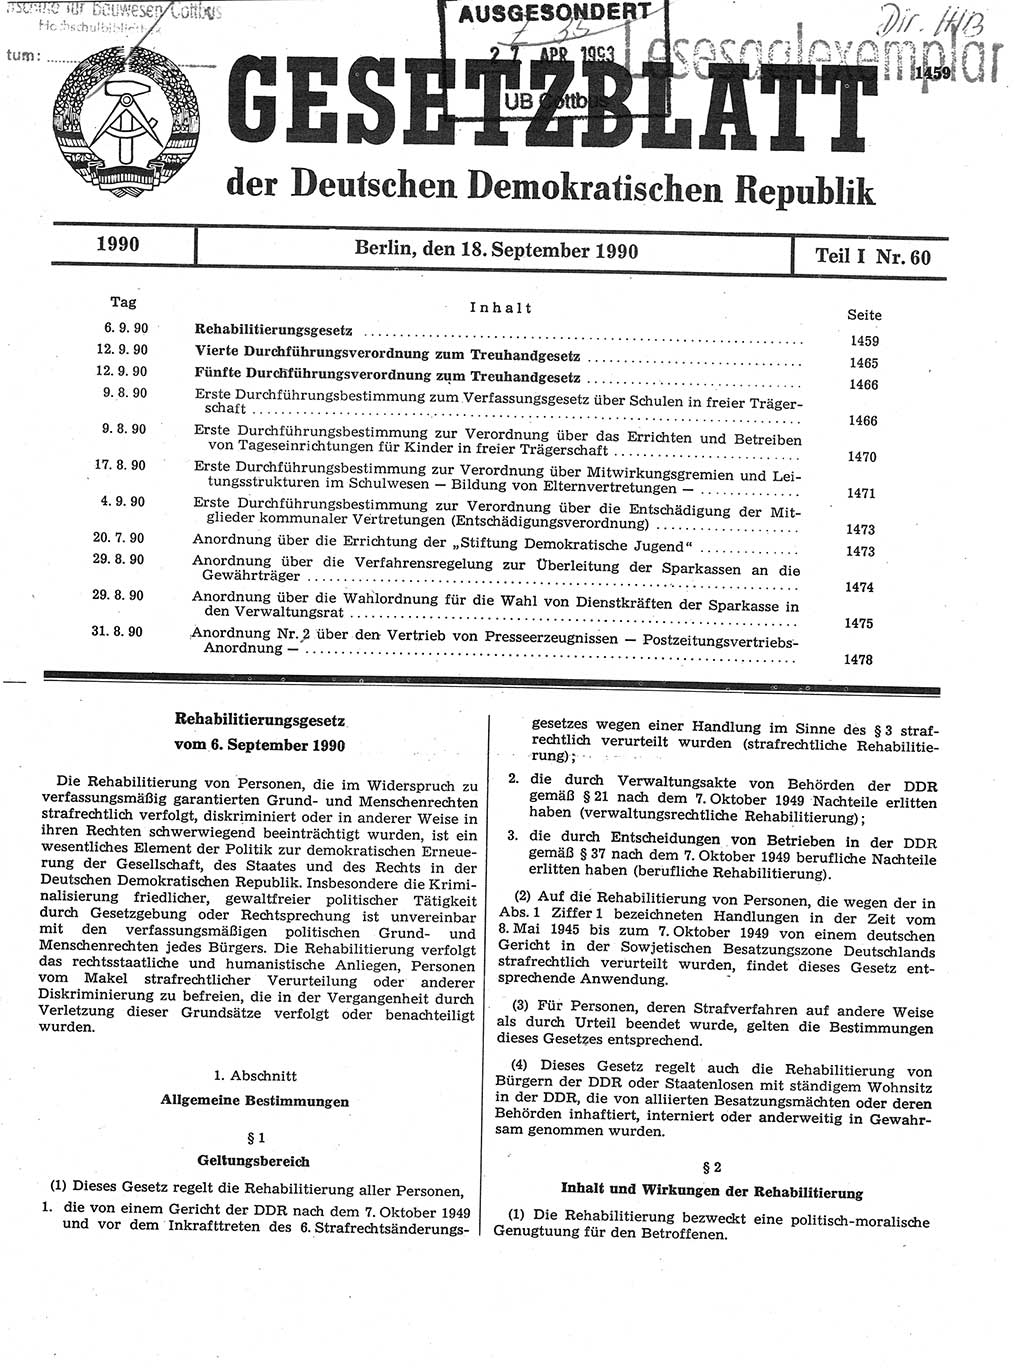 Gesetzblatt (GBl.) der Deutschen Demokratischen Republik (DDR) Teil Ⅰ 1990, Seite 1459 (GBl. DDR Ⅰ 1990, S. 1459)